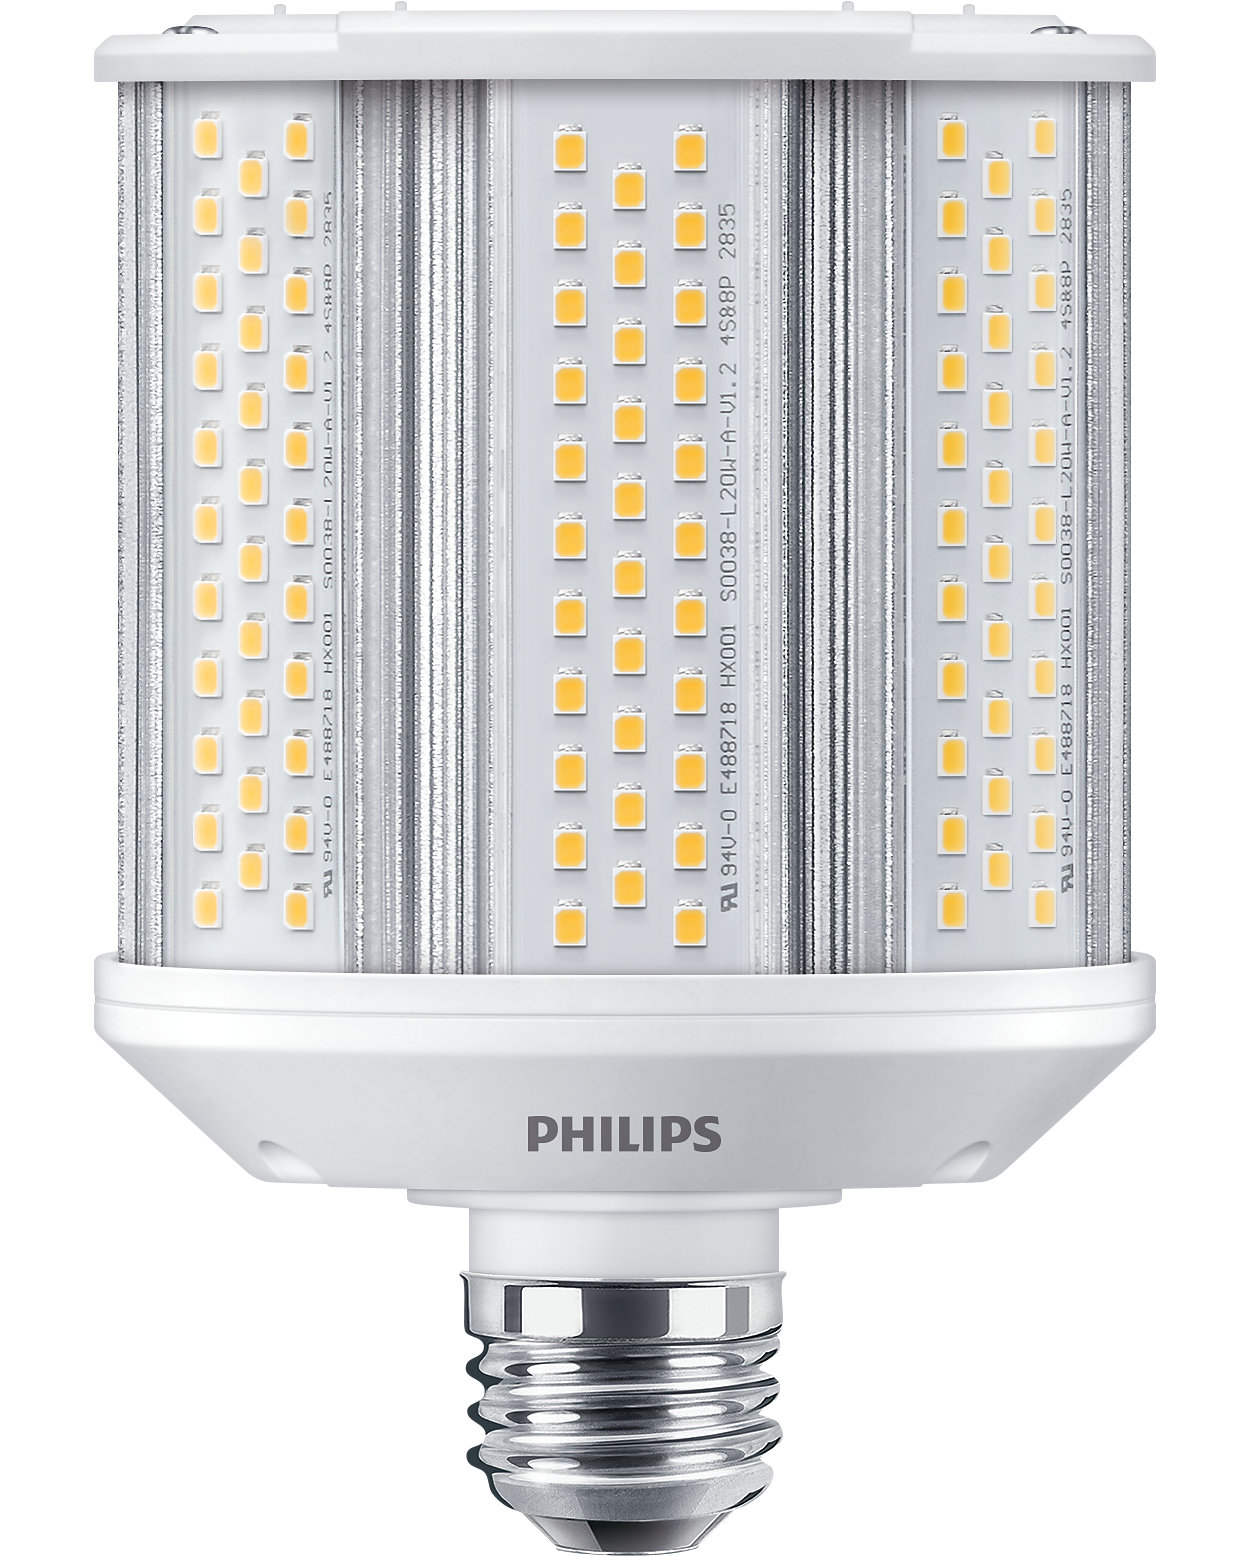 Lampe DEL professionnelle pour remplacer les lampes à décharge à haute intensité, modernisation instantanée, économies instantanées.